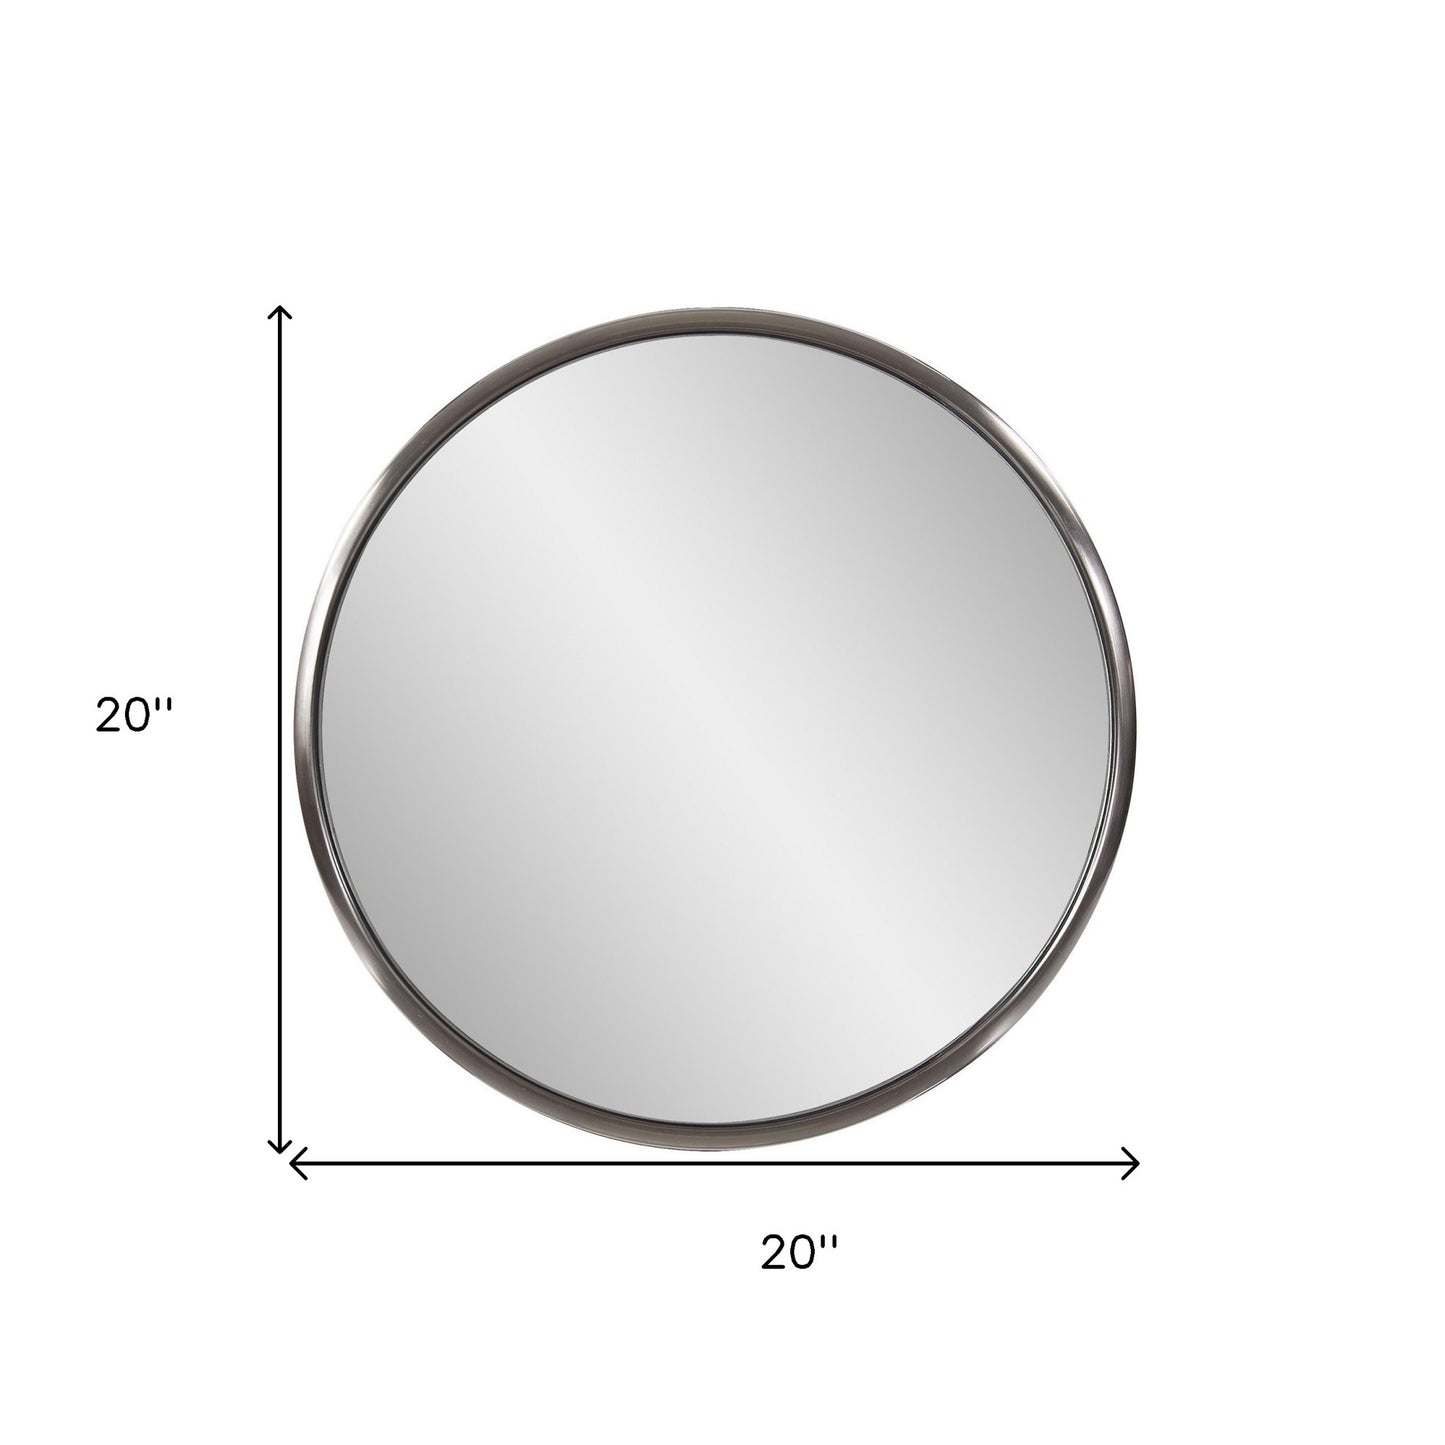 20" Brushed Titanium Round Wall Mirror